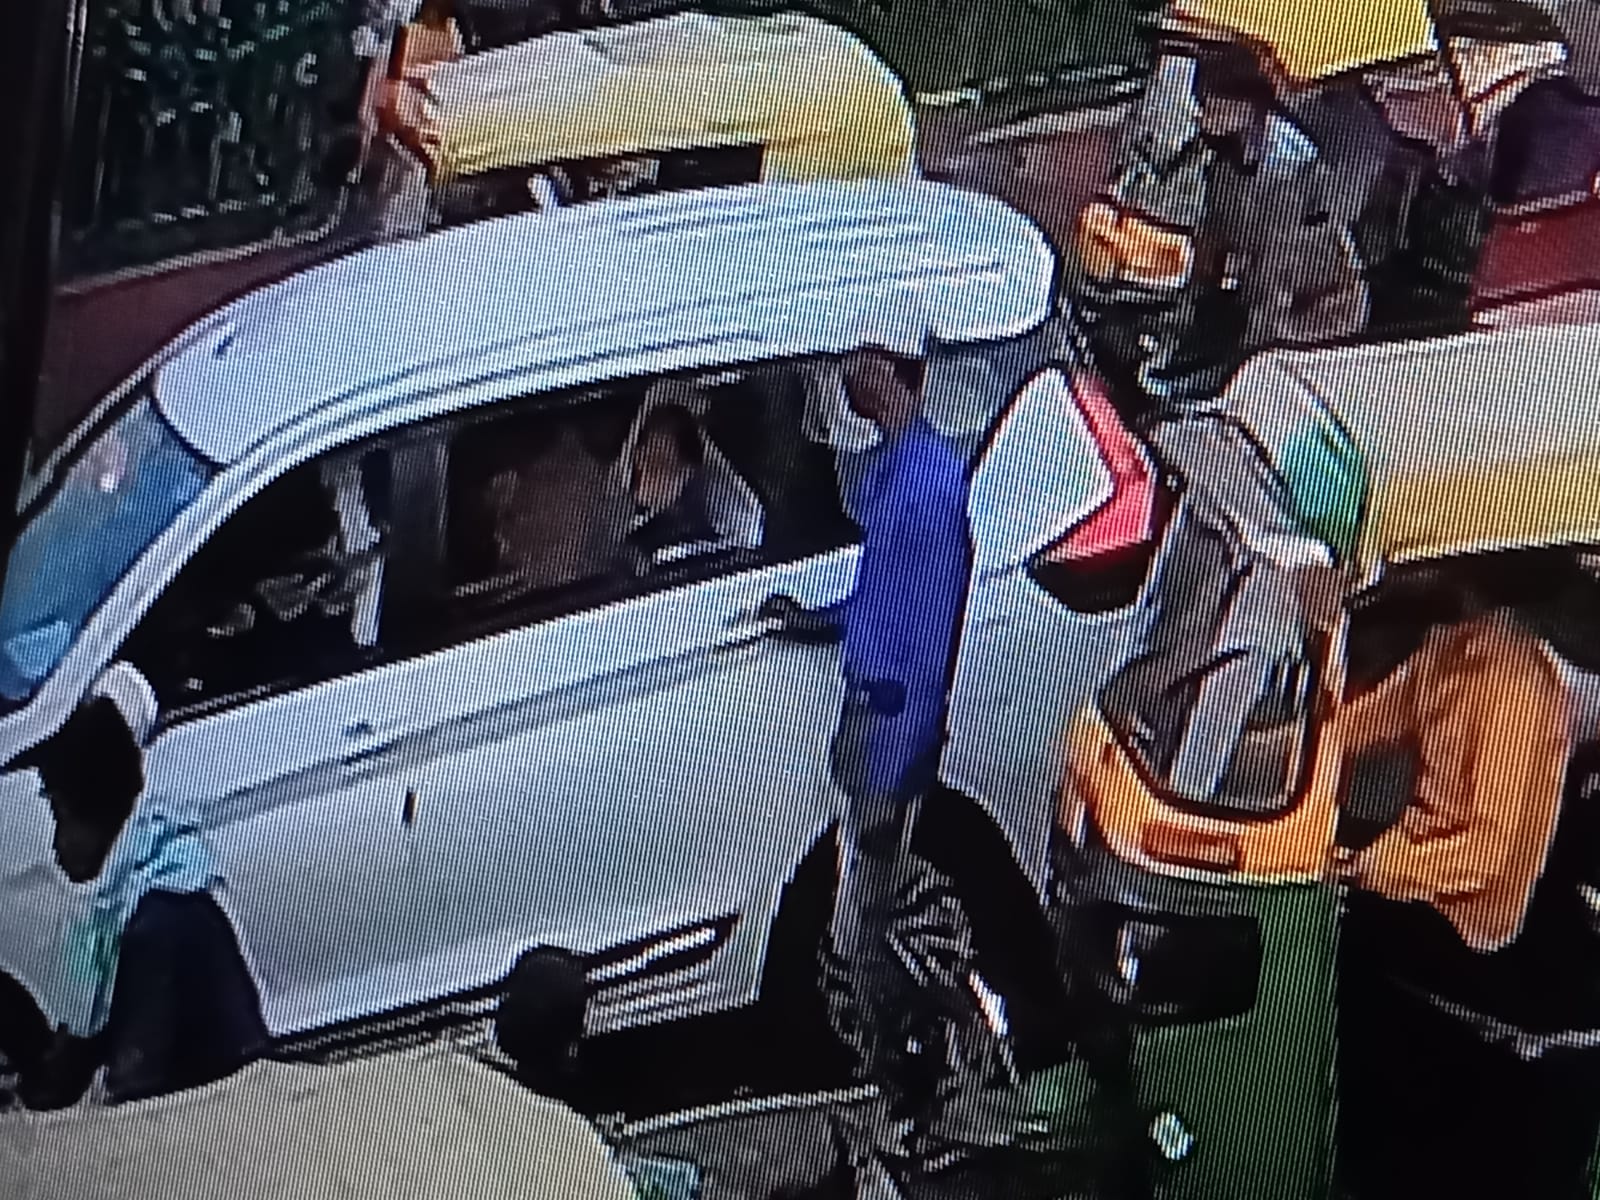 भाजपा नेता विजय गोयल का मोबाइल छीन ले गए बदमाश, पुलिस ने 12 घंटे में किया बरामद